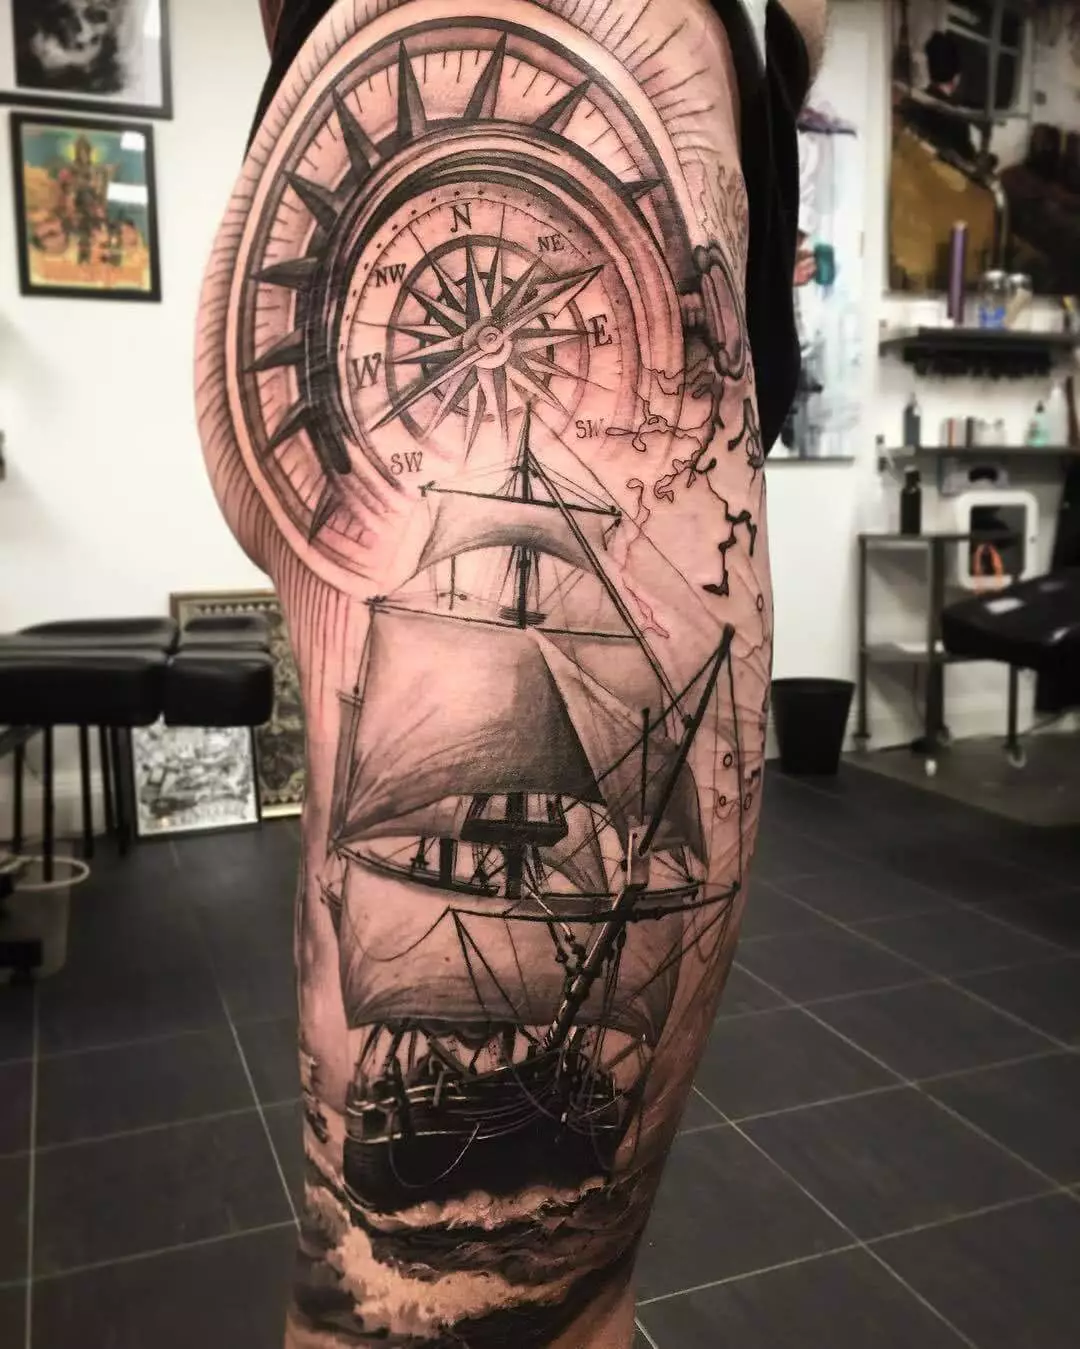 Kompass und Segelschiff auf dem Bein